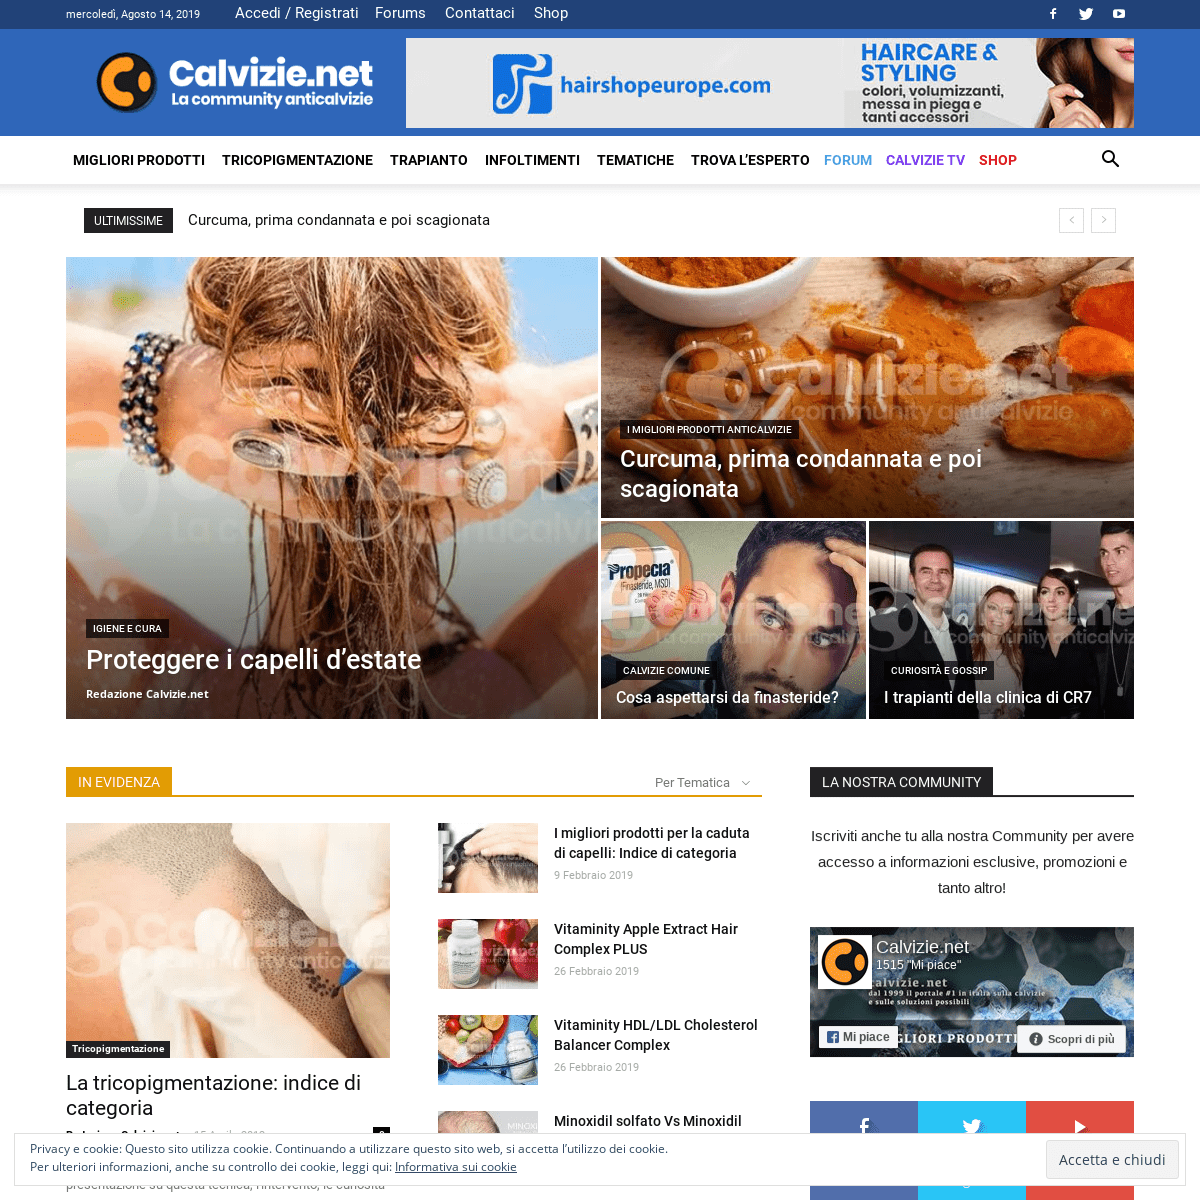 Calvizie - Calvizie.net dal 1999 il portale #1 in Italia sulla calvizie e caduta dei capelli